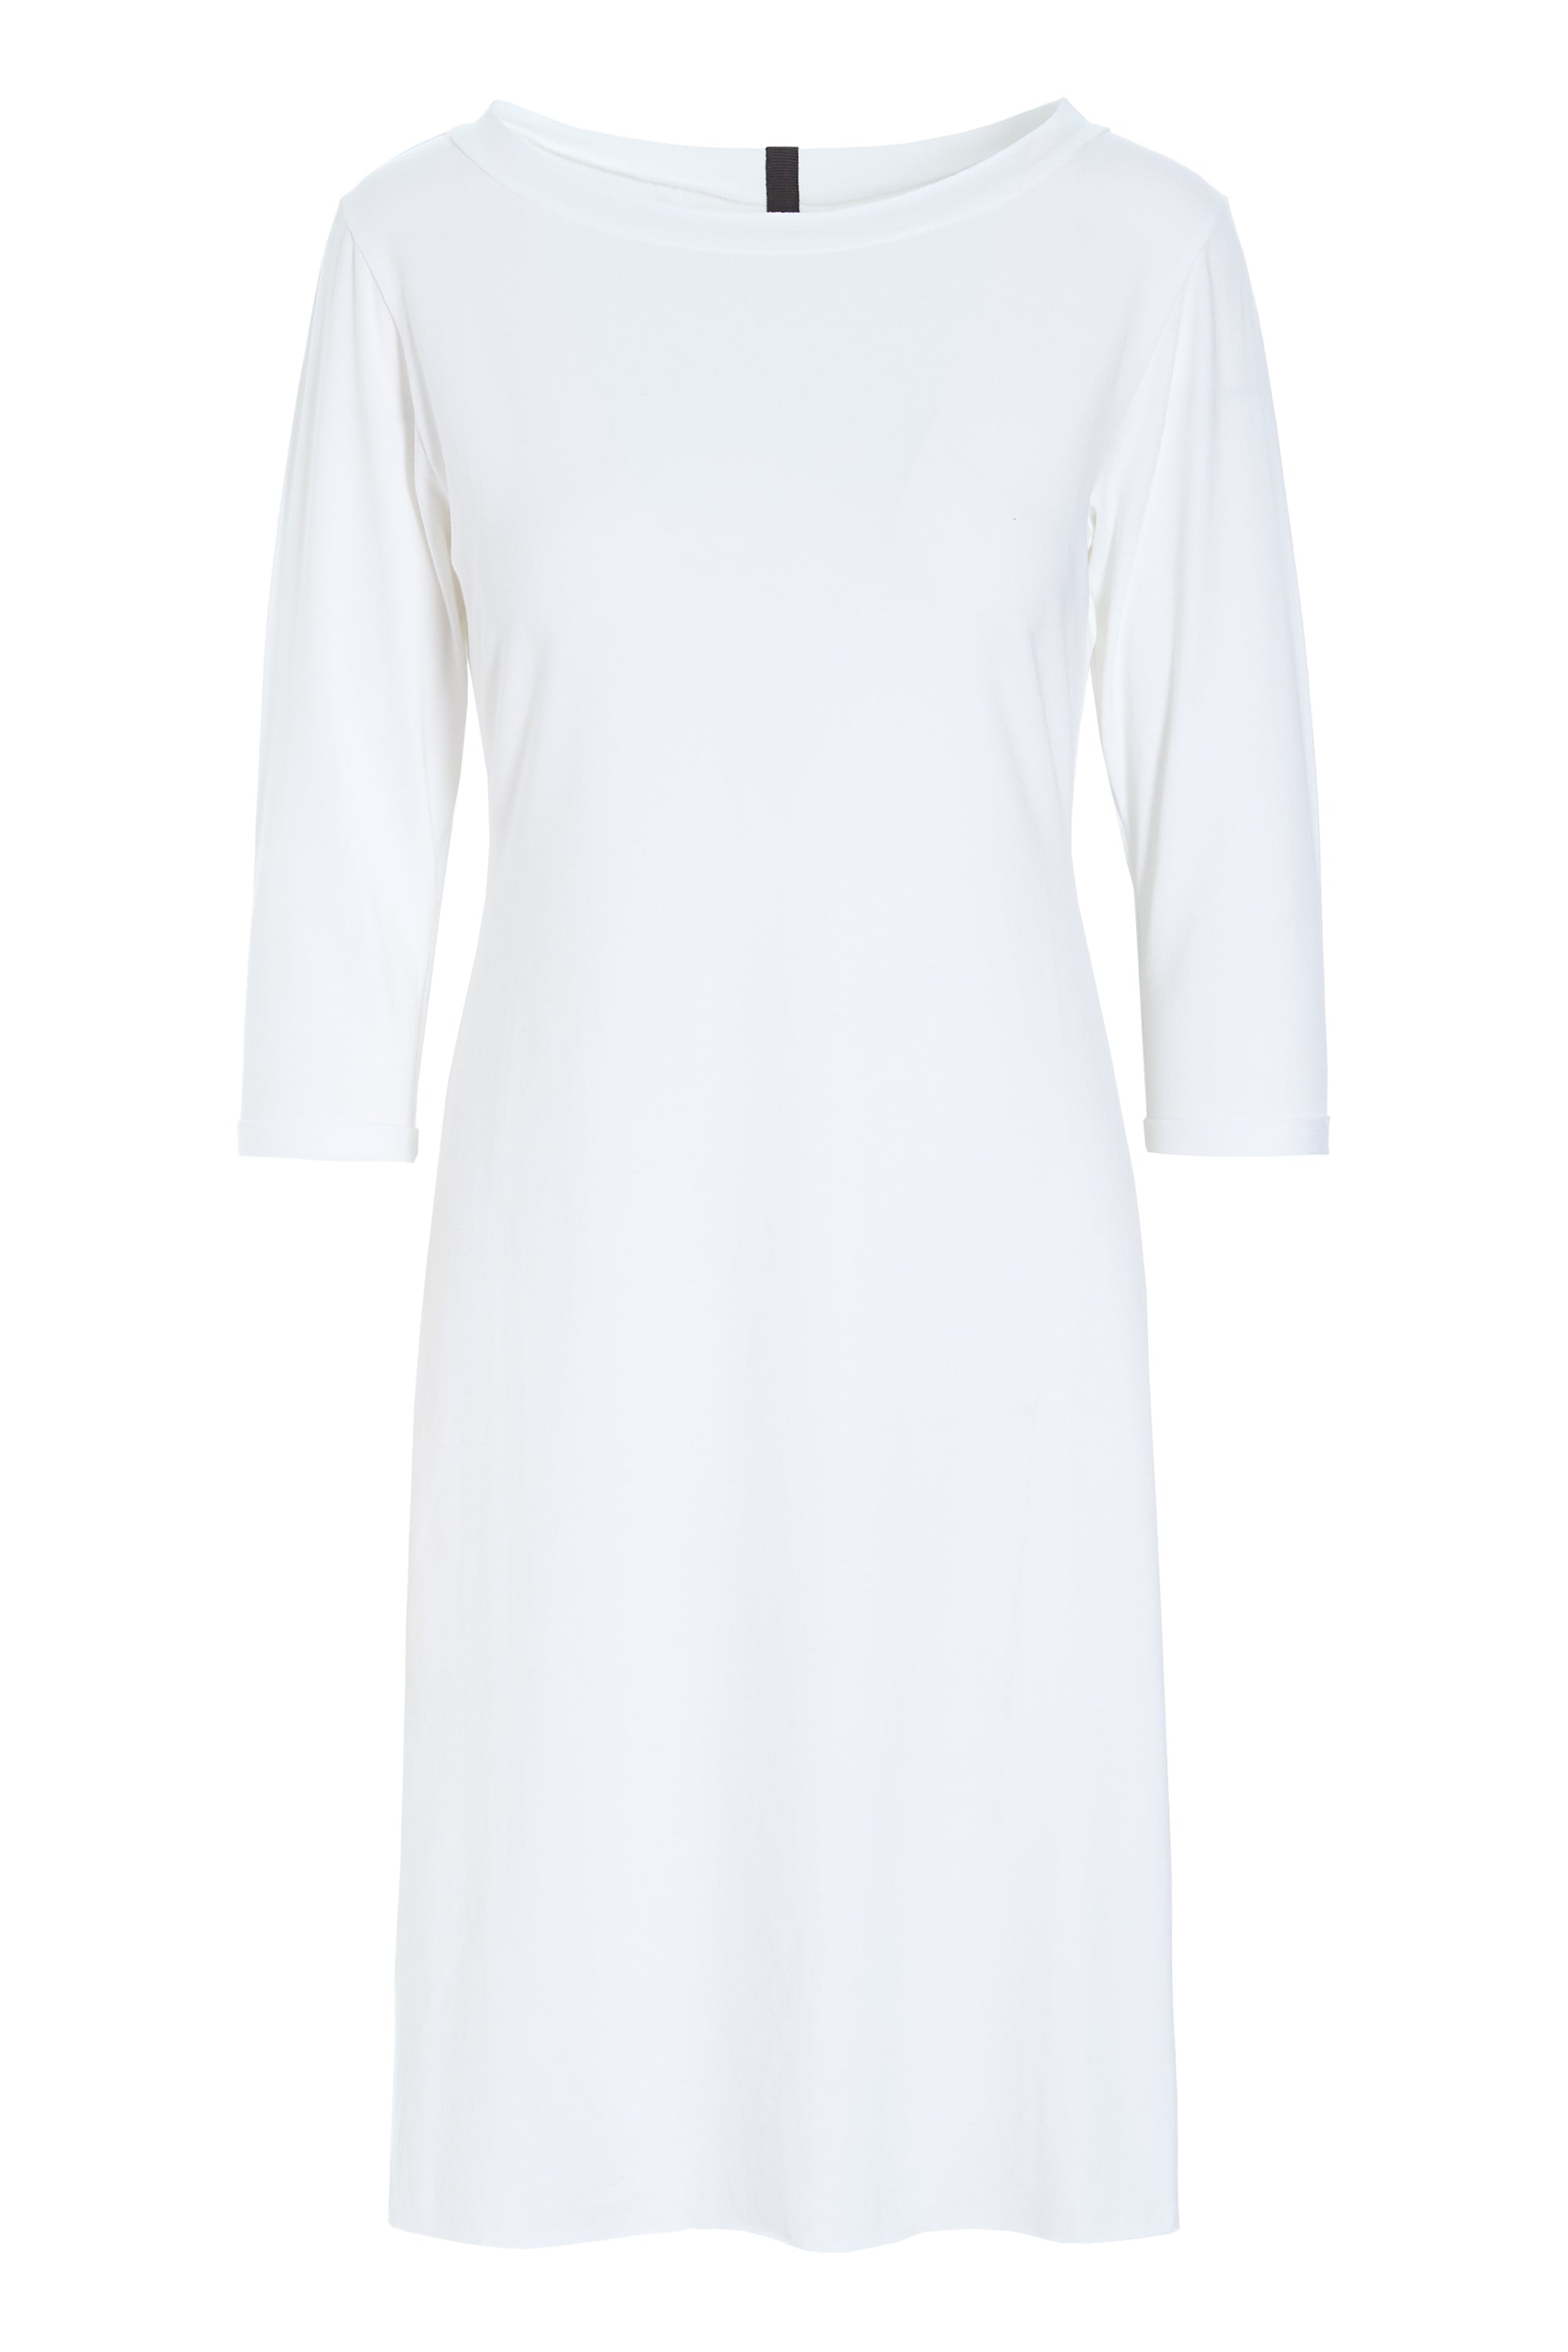 HENRIETTE STEFFENSEN COPENHAGEN KJOLE - 98046 DRESSES jersey WHITE 816